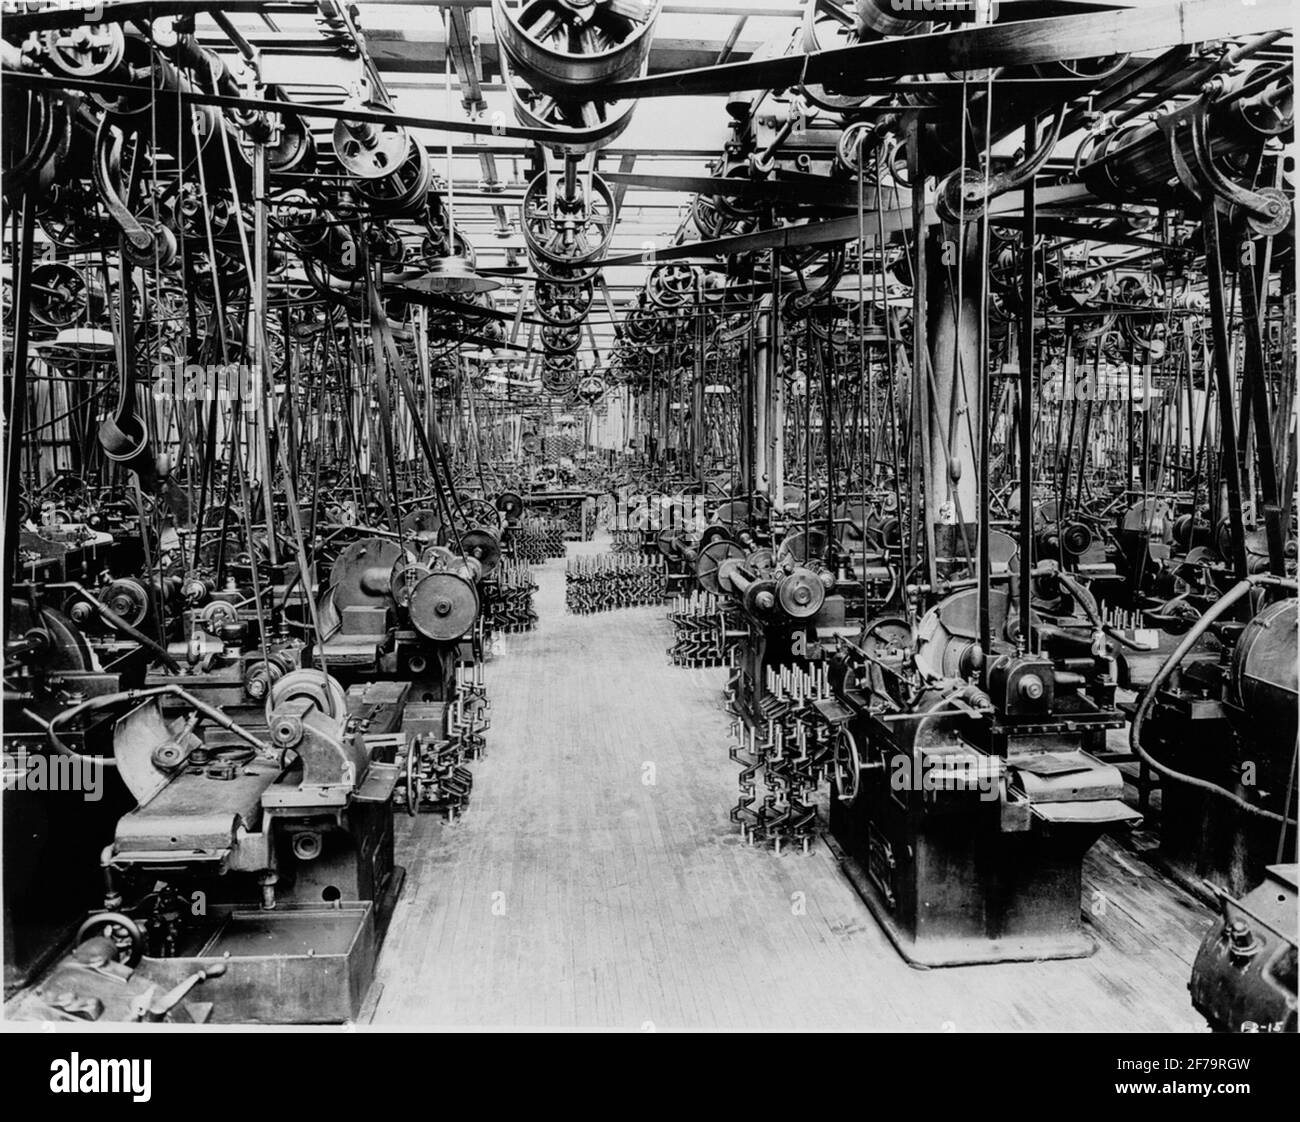 Центры промышленной революции. Фабрика промышленный переворот. Машиностроение Промышленная революция. Машиностроение 18 век. Промышленная революция фото.